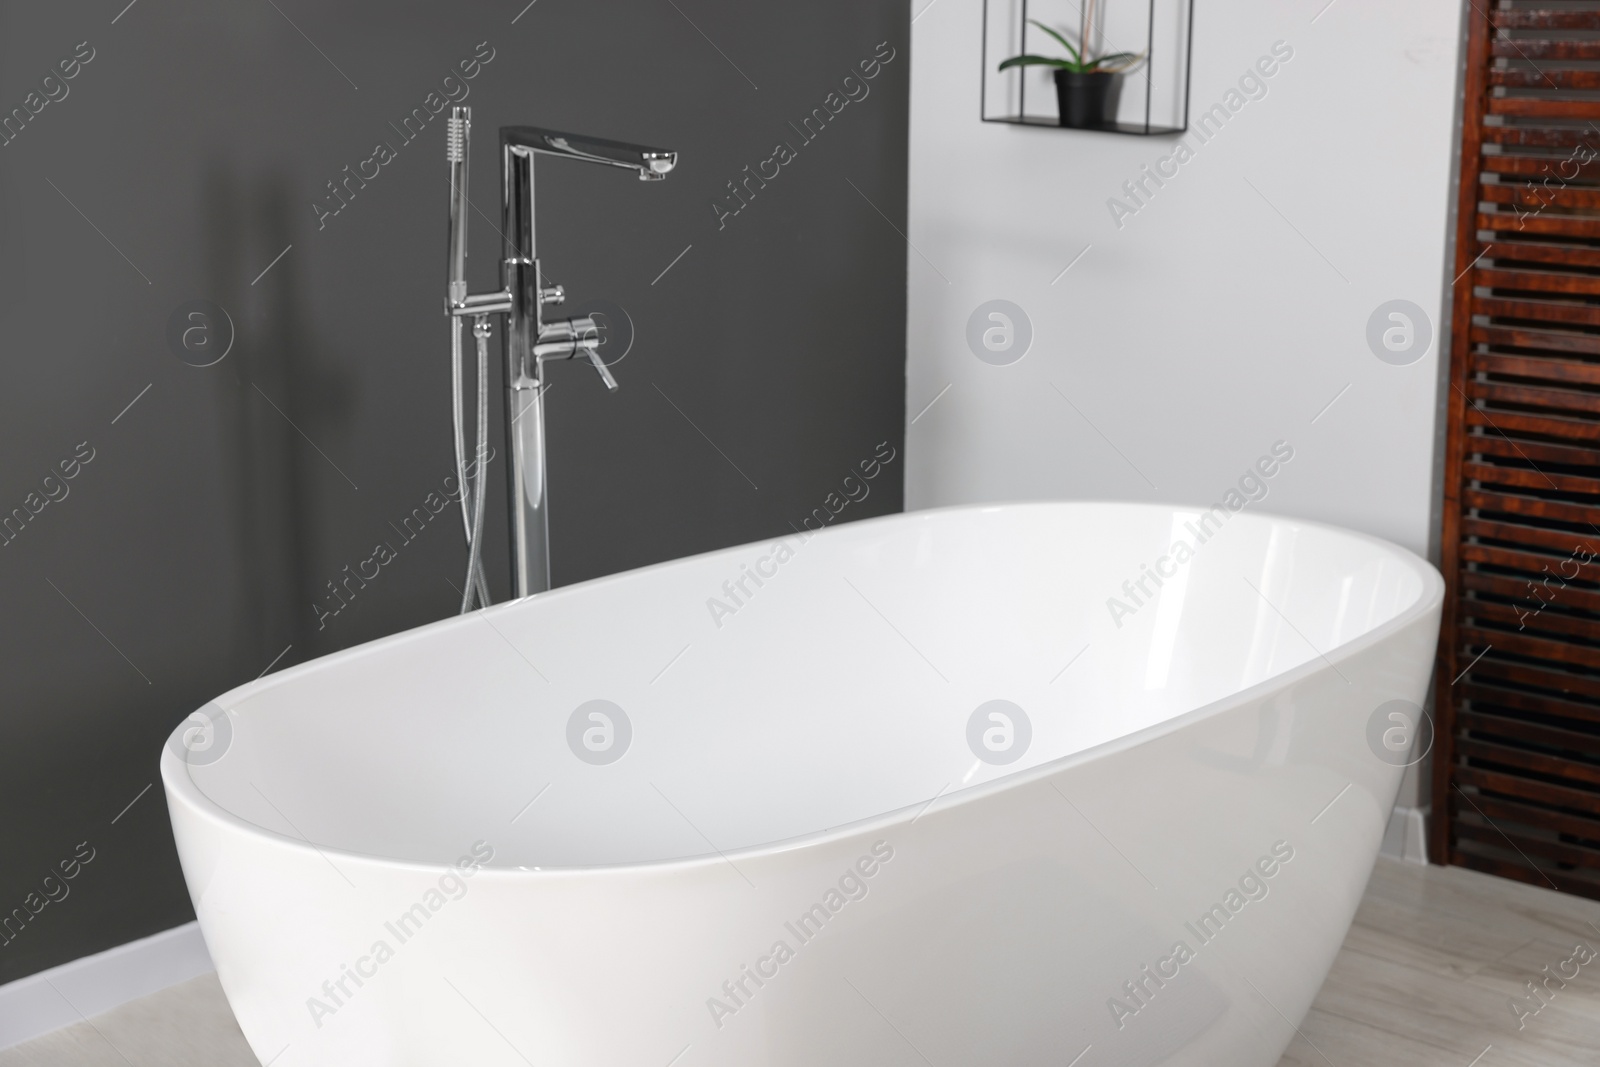 Photo of Stylish ceramic tub and modern tab in bathroom